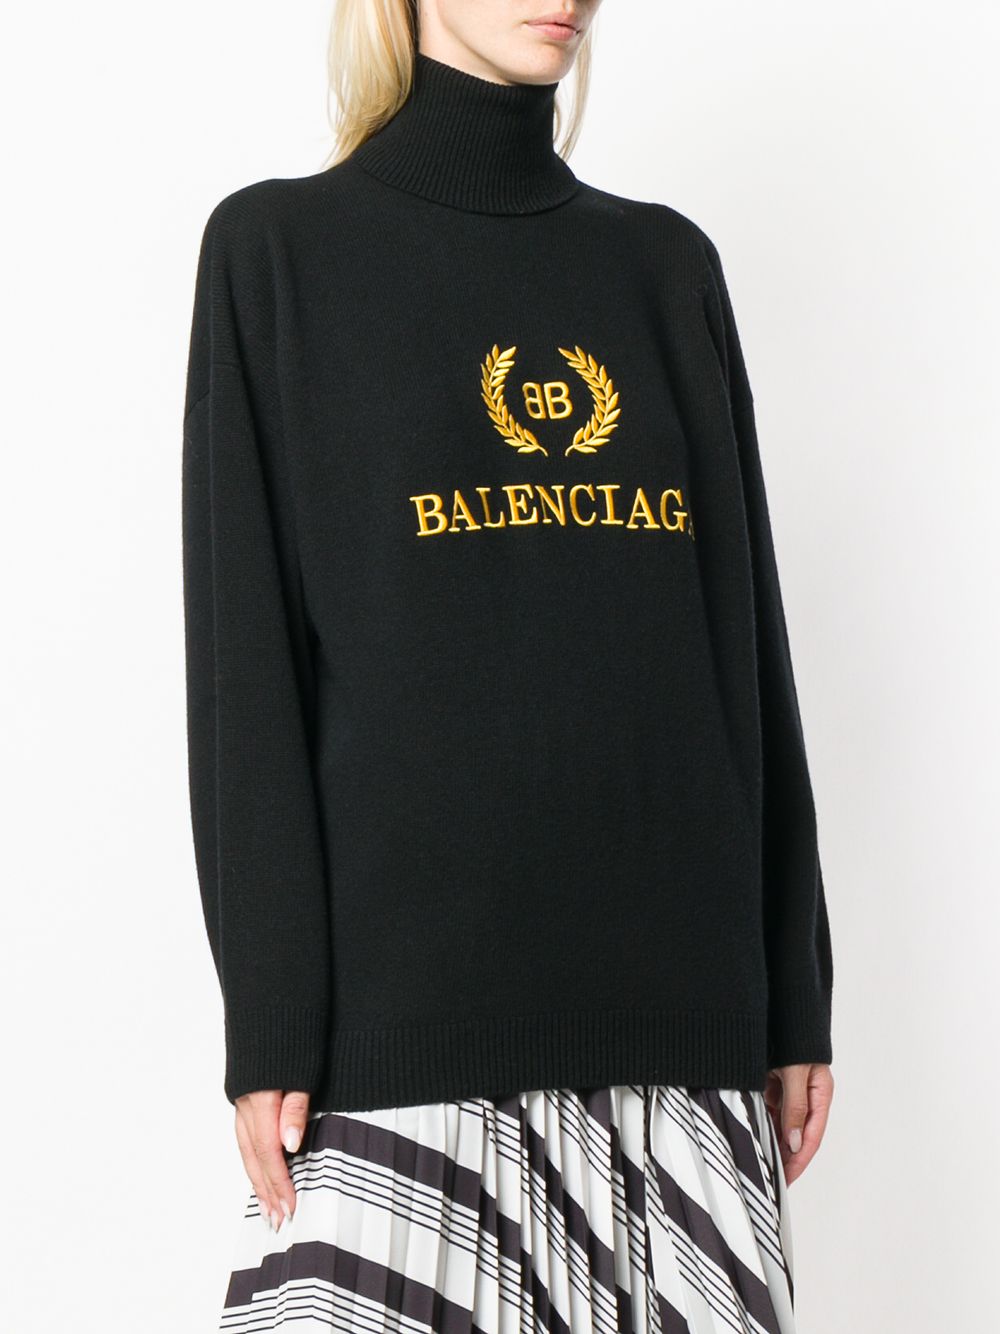 фото Balenciaga свитер с высокой горловиной и вышивкой логотипа